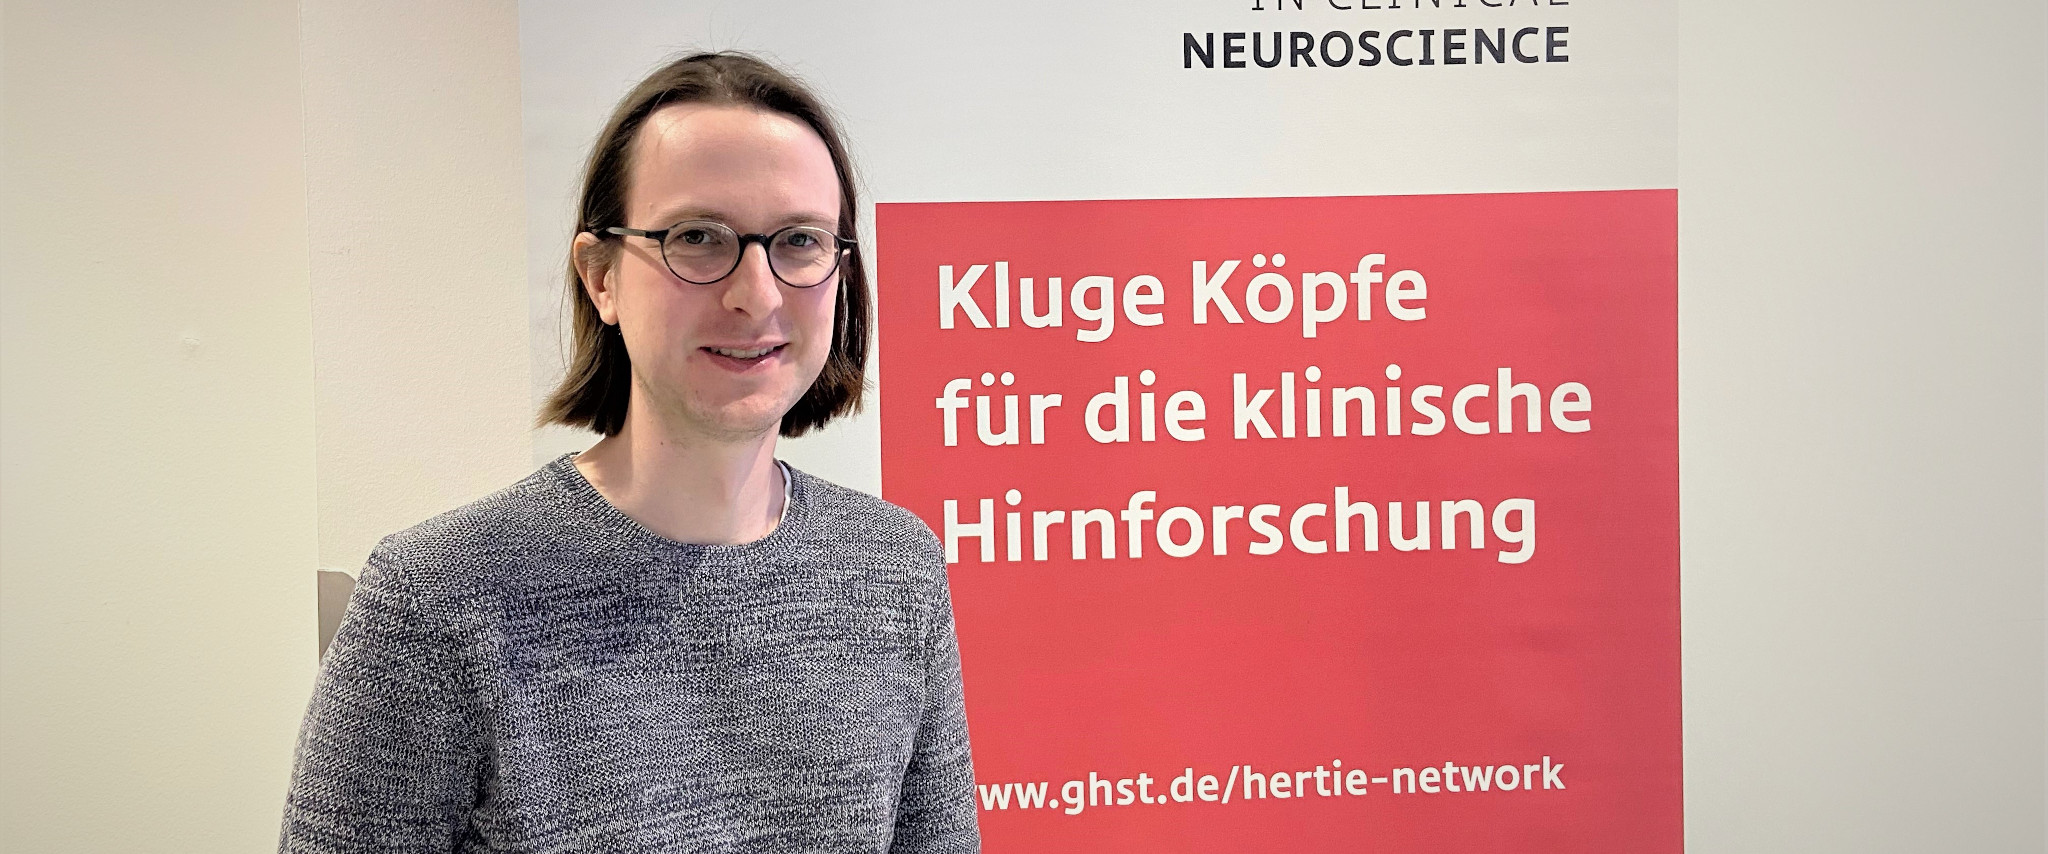 Symposium in Bonn: Gehirnforschung weiter voranbringen